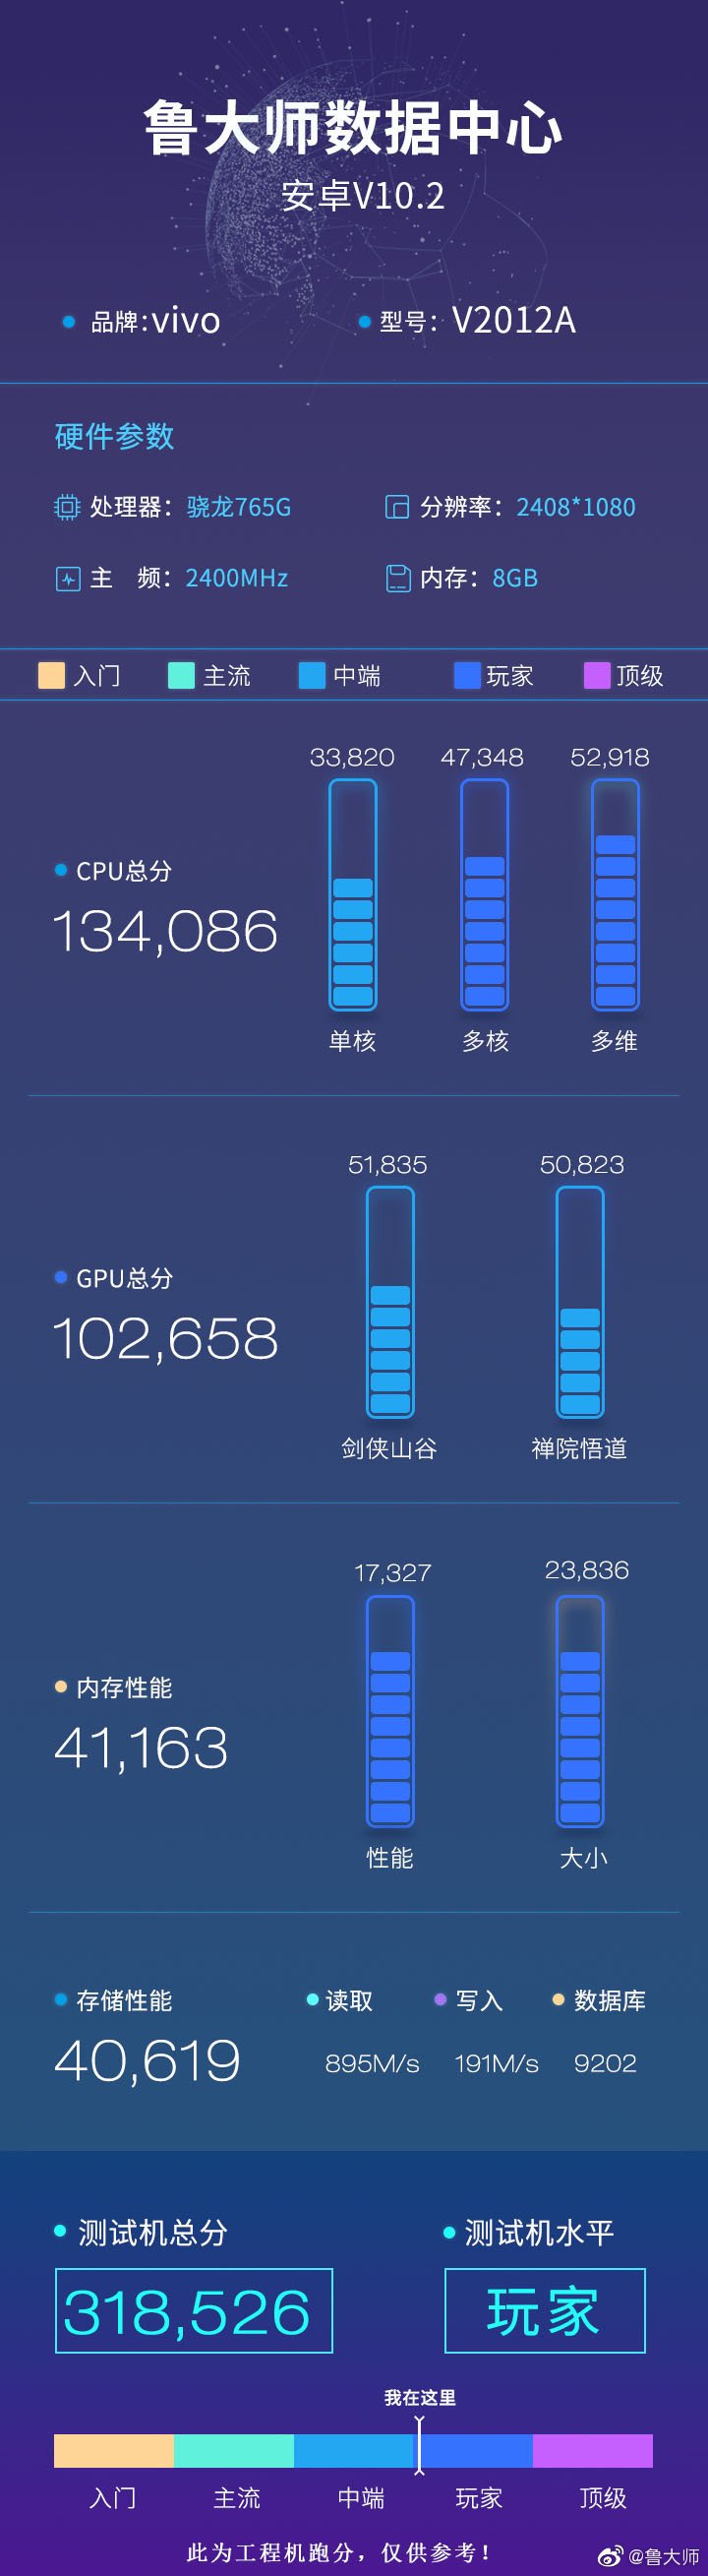 El "iQOO Z1x" y sus resultados del Master Lu. (Fuente: Twitter)